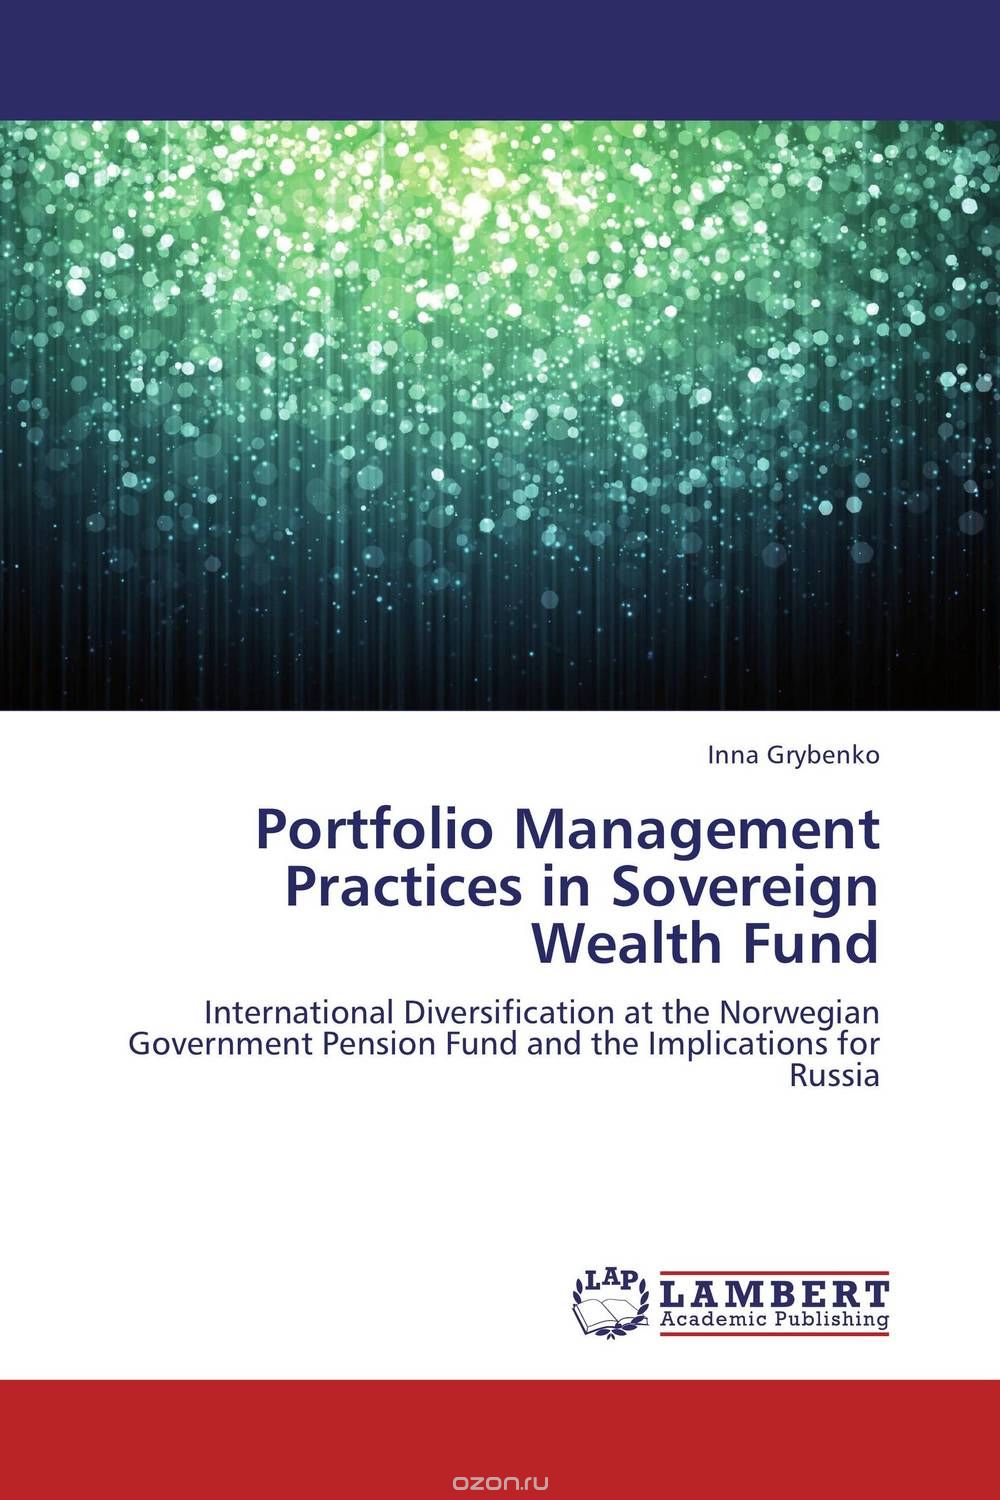 Скачать книгу "Portfolio Management Practices in Sovereign Wealth Fund"